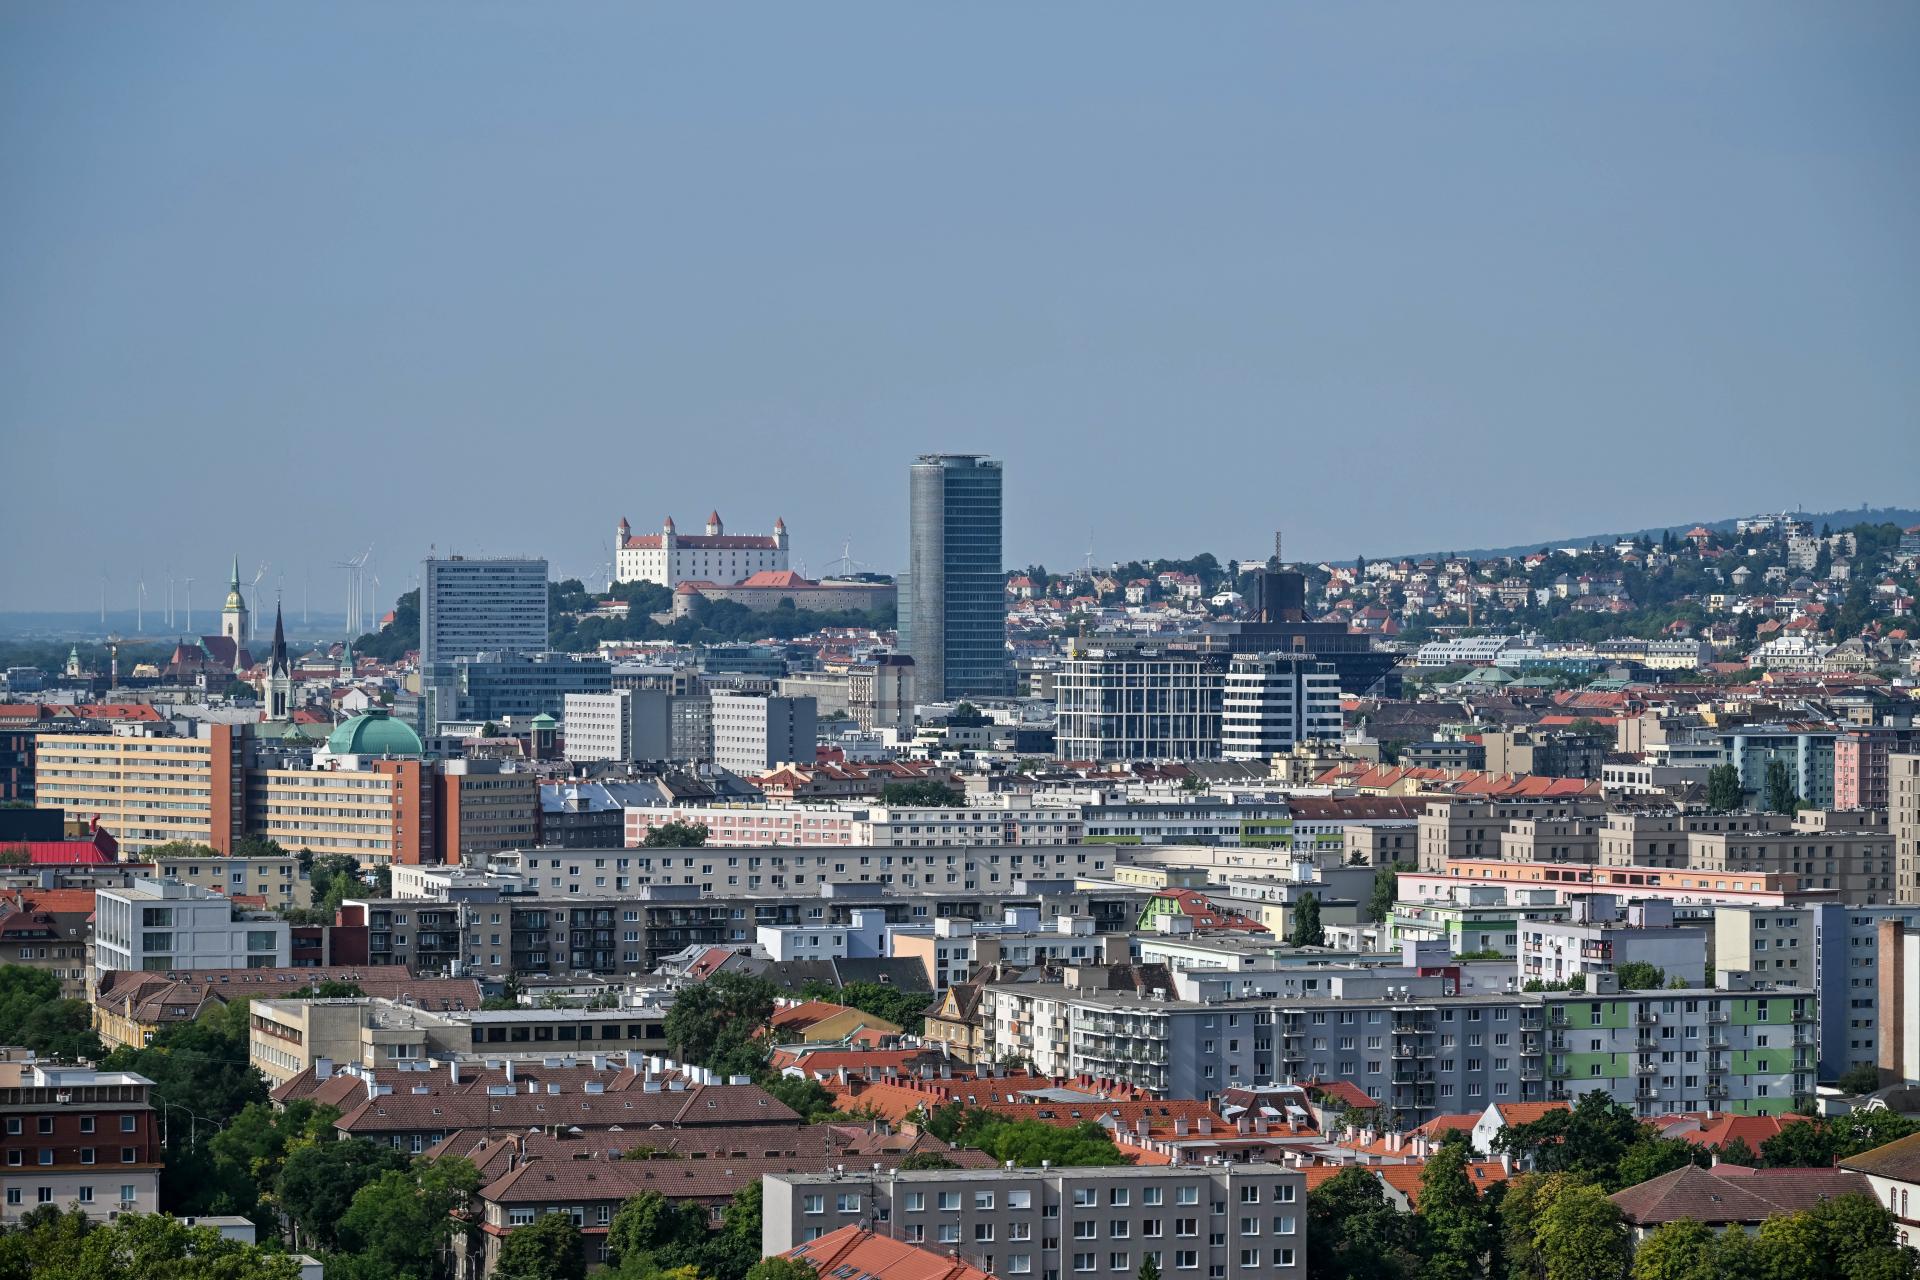 Developeri bojujú o lukratívne územia. V najvyhľadávanejšej lokalite Bratislavy je dvojnásobná ponuka